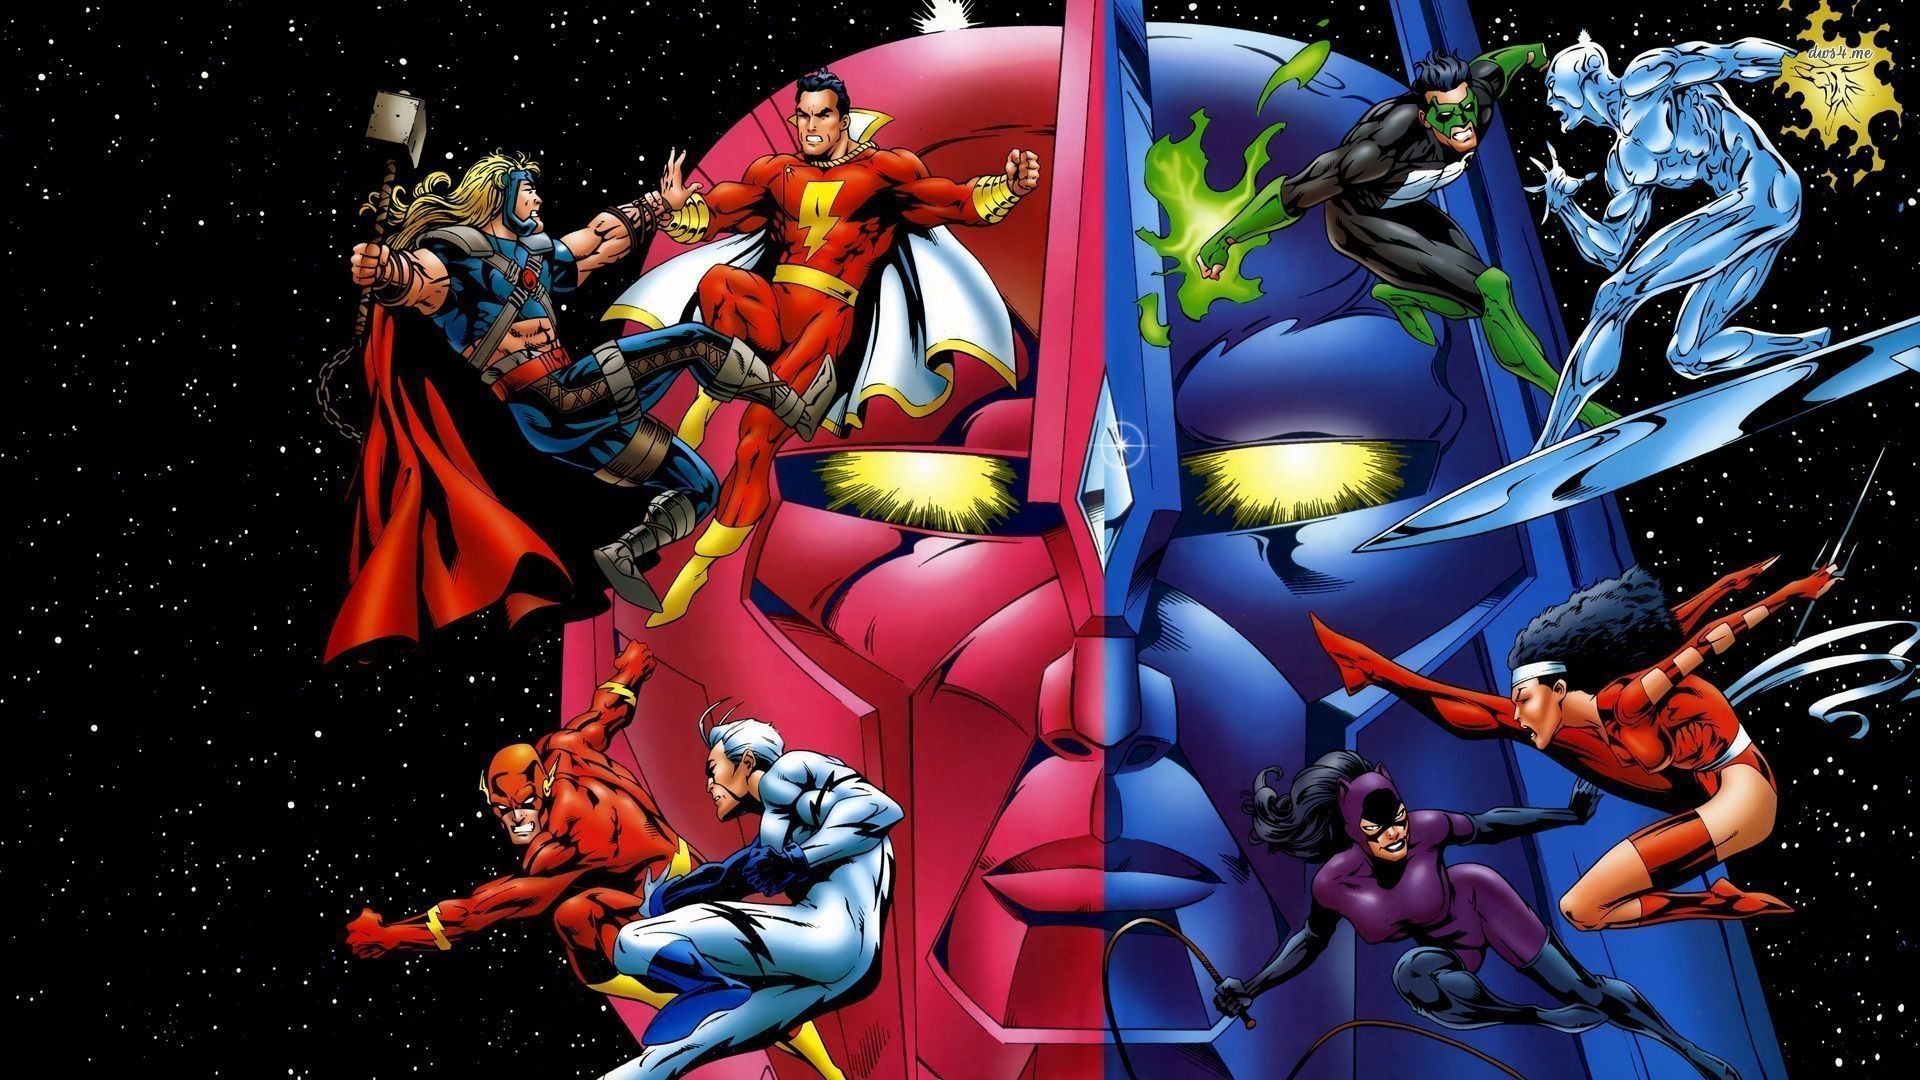 DC Comics vs Marvel superheroes wallpaper wallpaper - Dc comics wallpaper, Creative graphics, Wallpaper